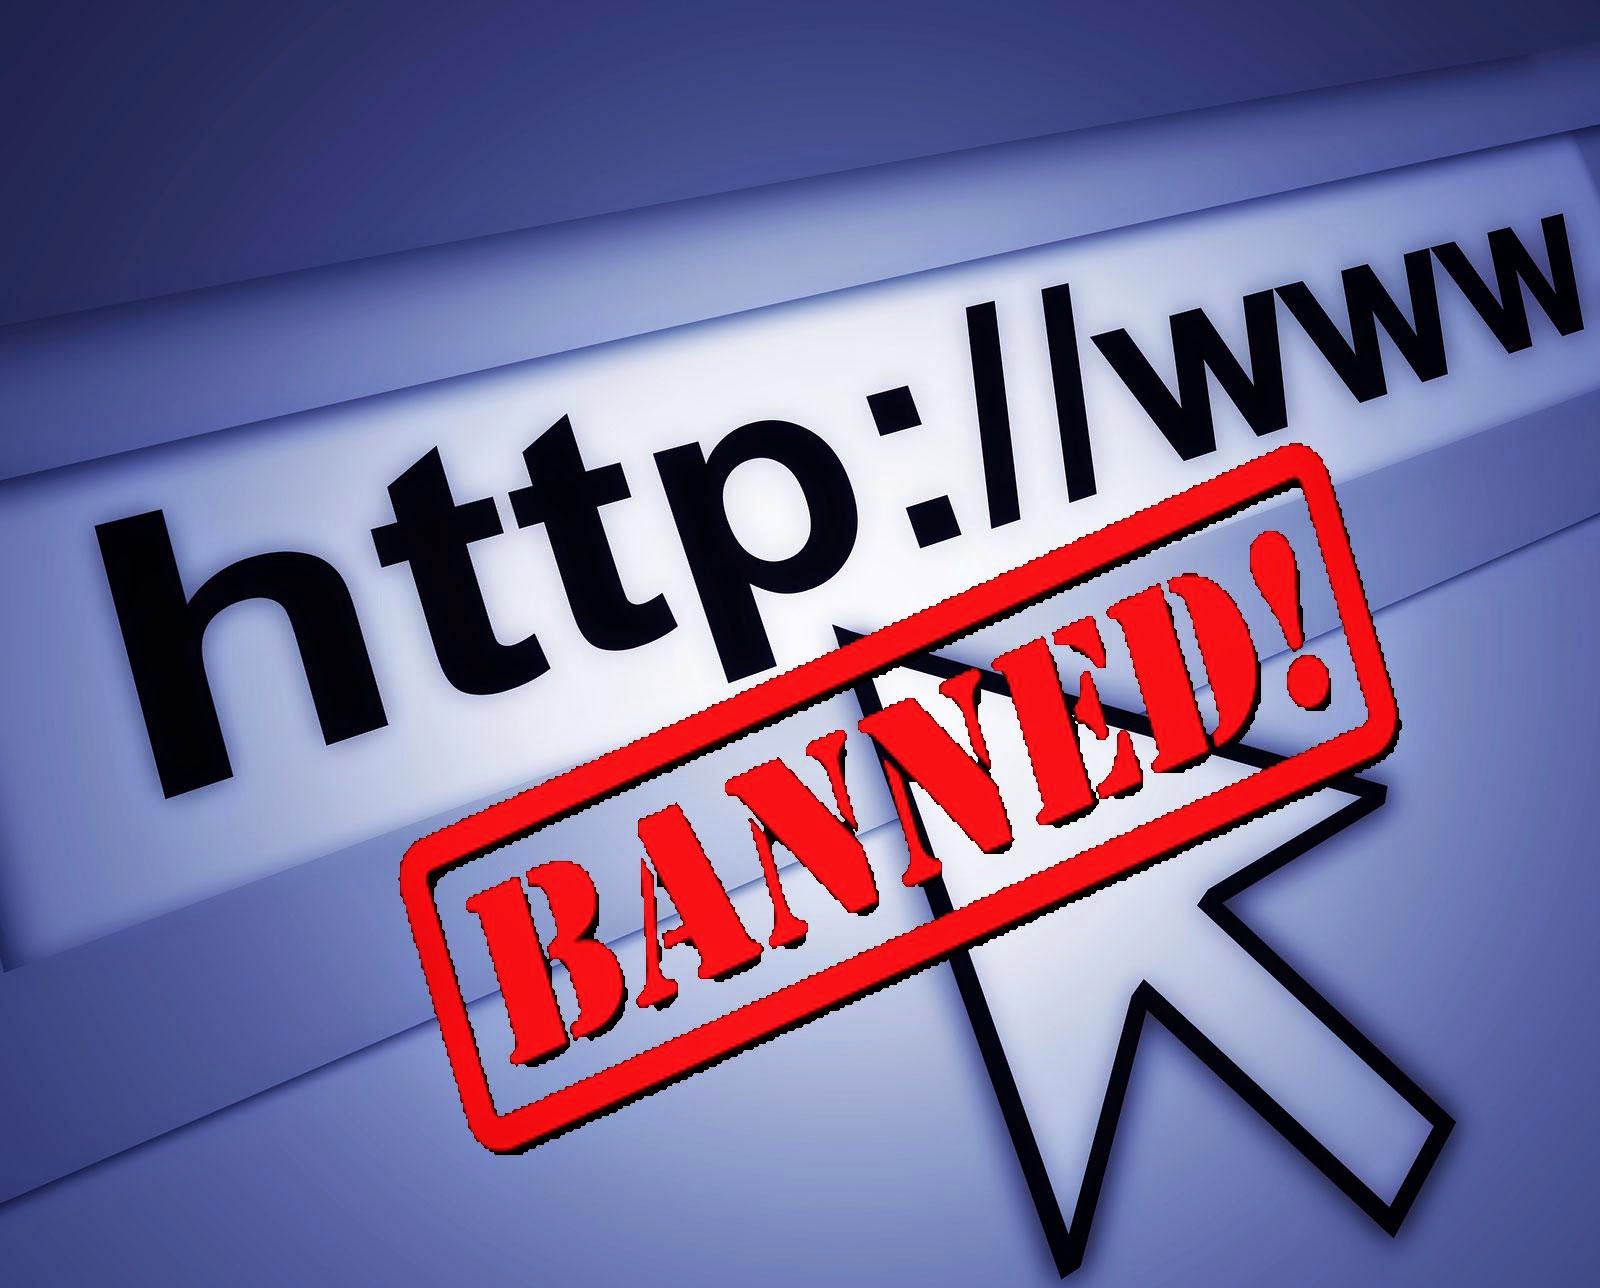 شرح كيفية حظر تصفح عدد من المواقع بسهولة من خلال الواتر Ban sites through router